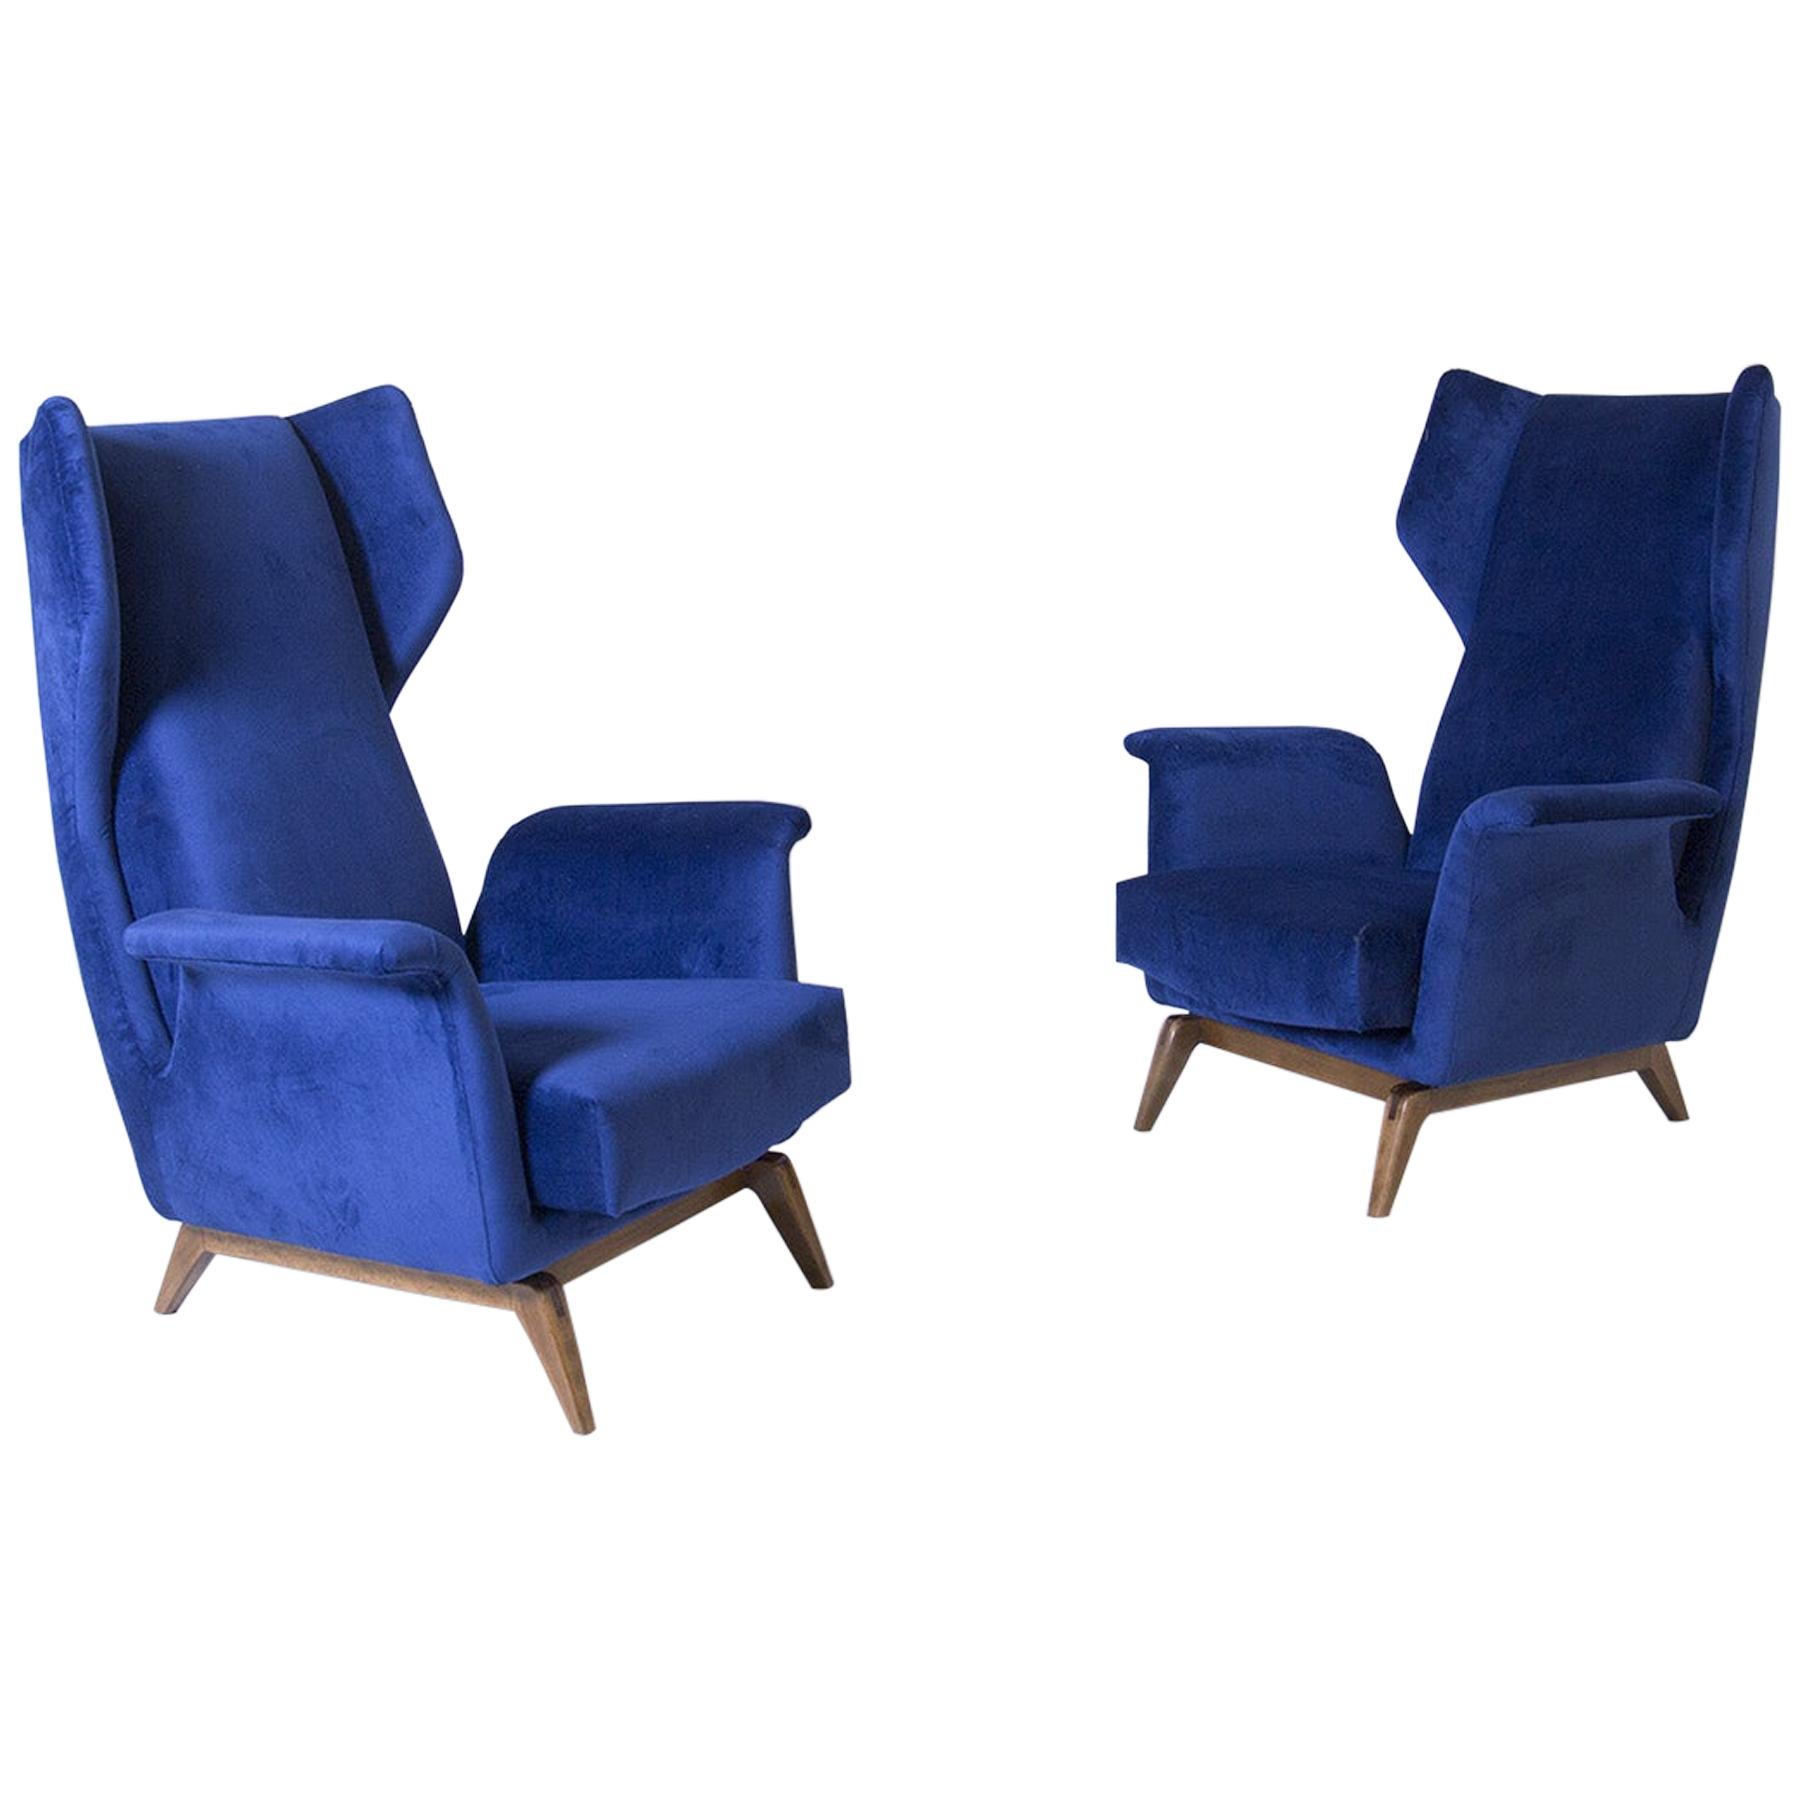 Pair of Italian Armchairs by Cassina in Blue Velvet, 1950s